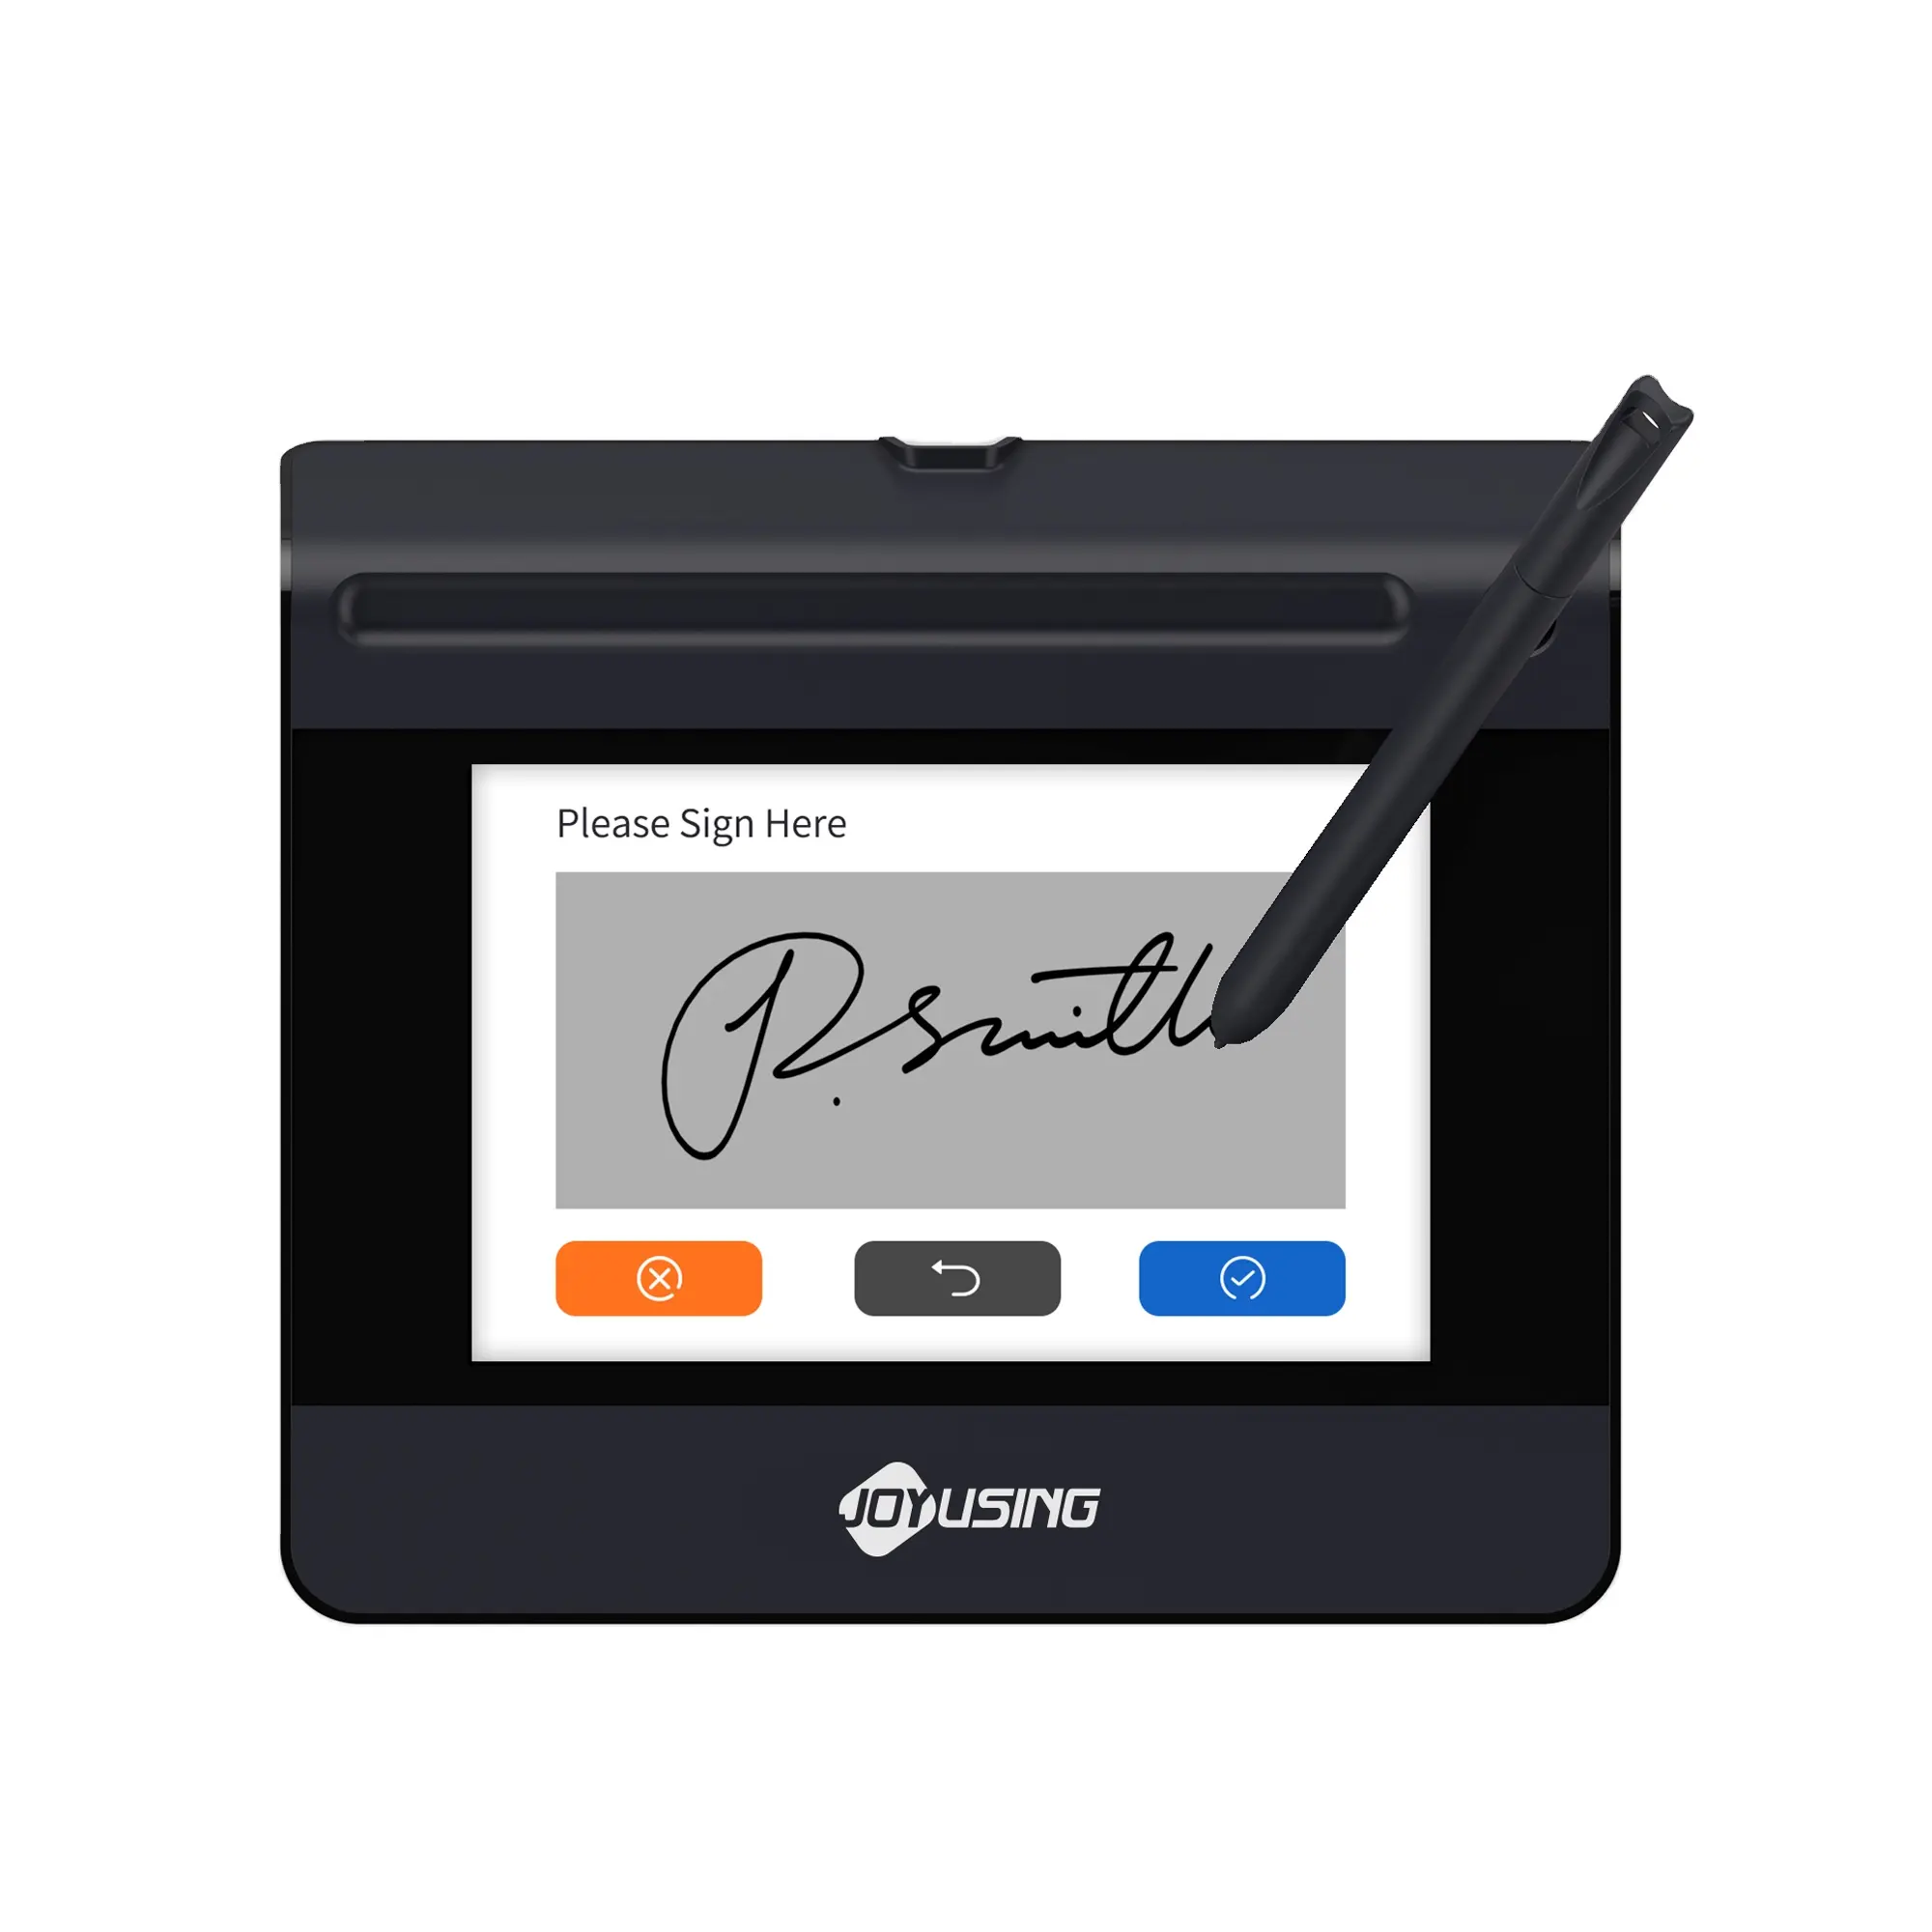 Joyusing Sp550 firma elettronica Pad scrittura a mano Oem a buon mercato blocco di scrittura buon prezzo per la verifica dell'identità multiuso